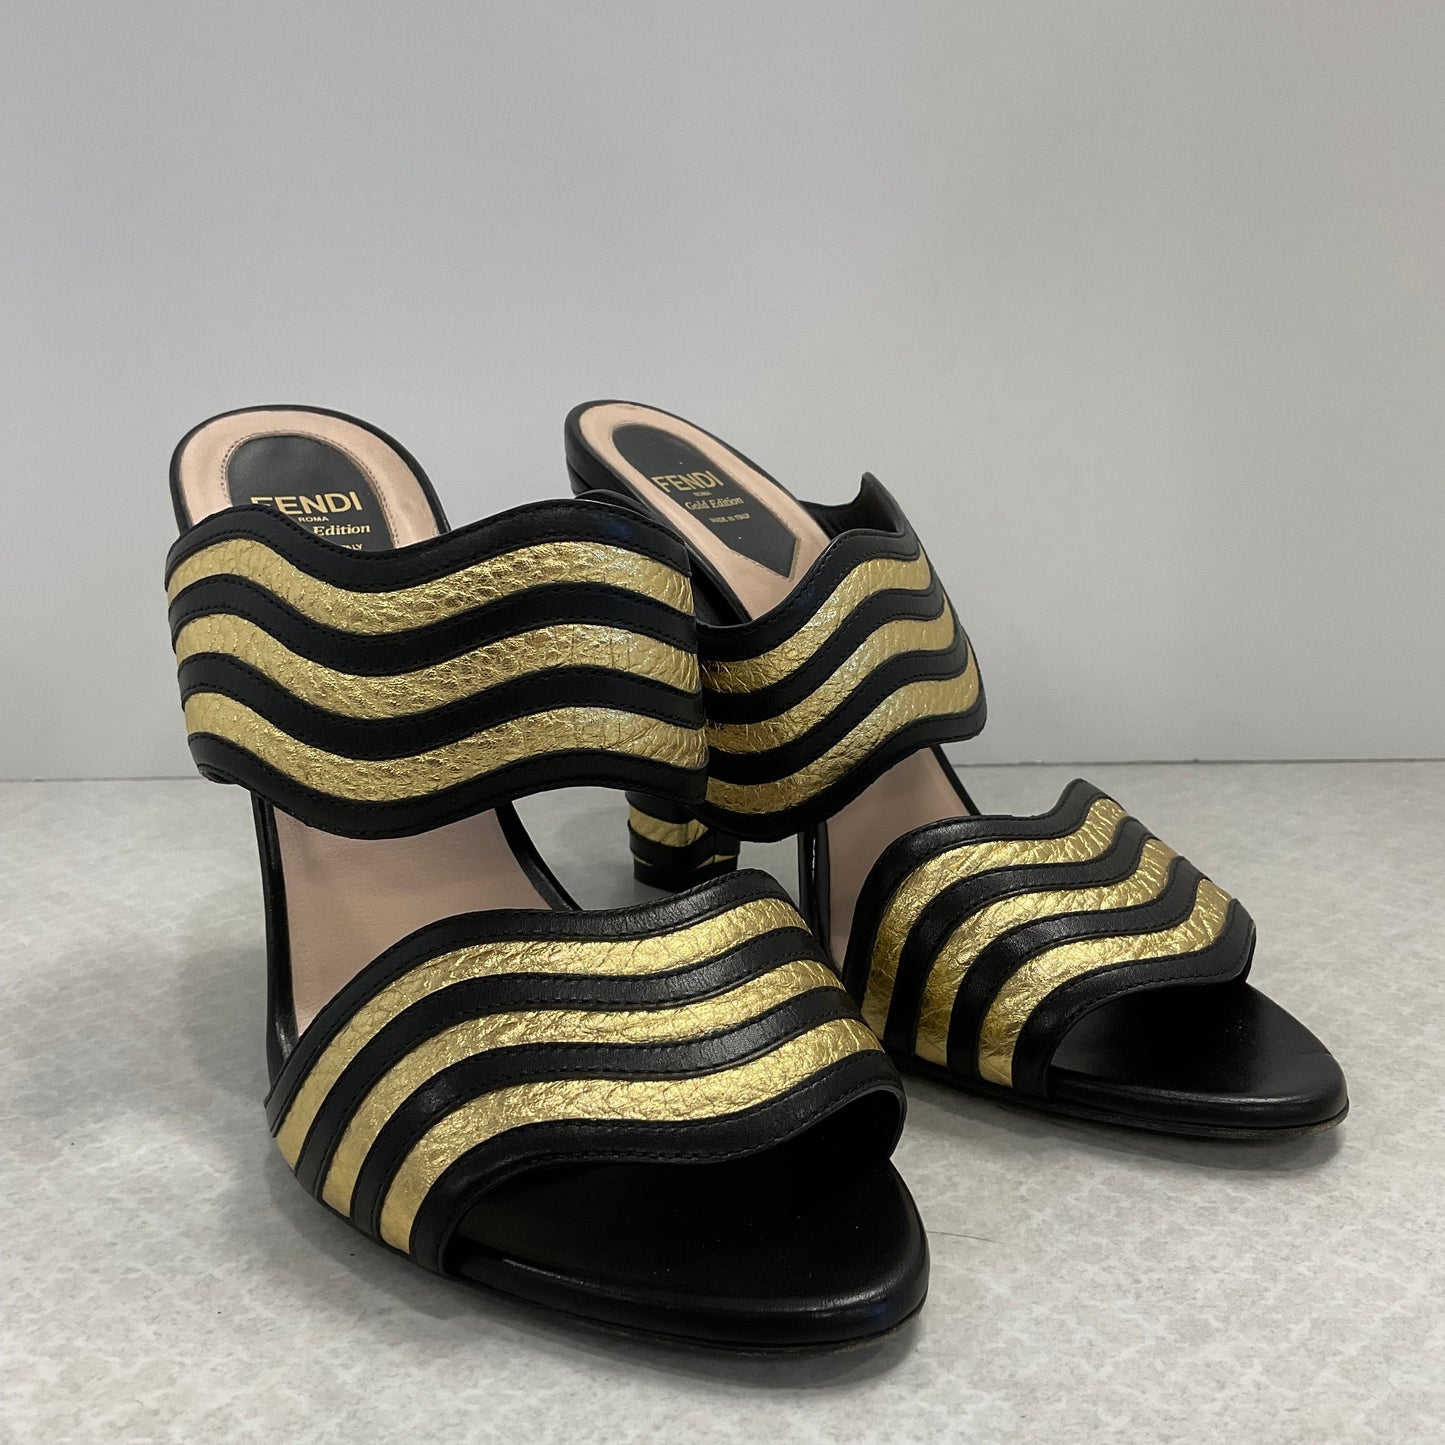 Black & Gold Shoes Luxury Designer Fendi, Size 7.5